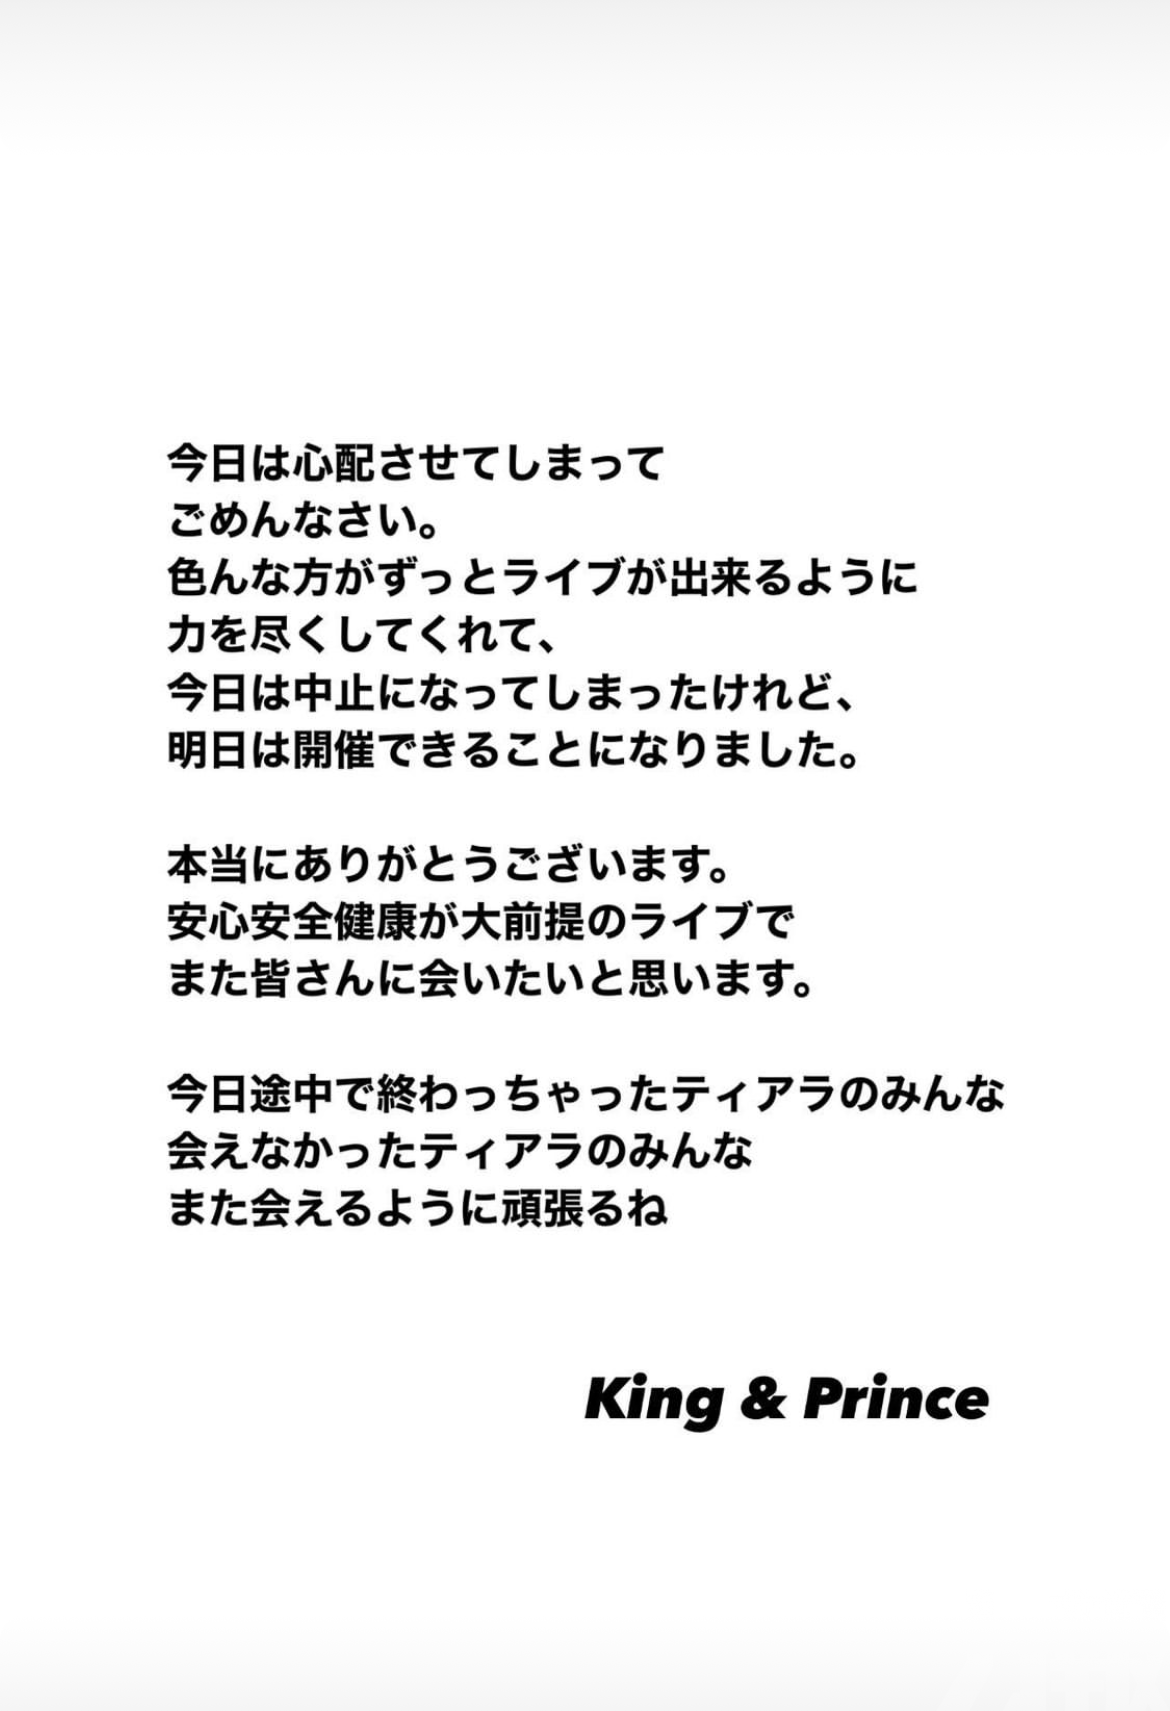 King & Prince札幌騷腰斬